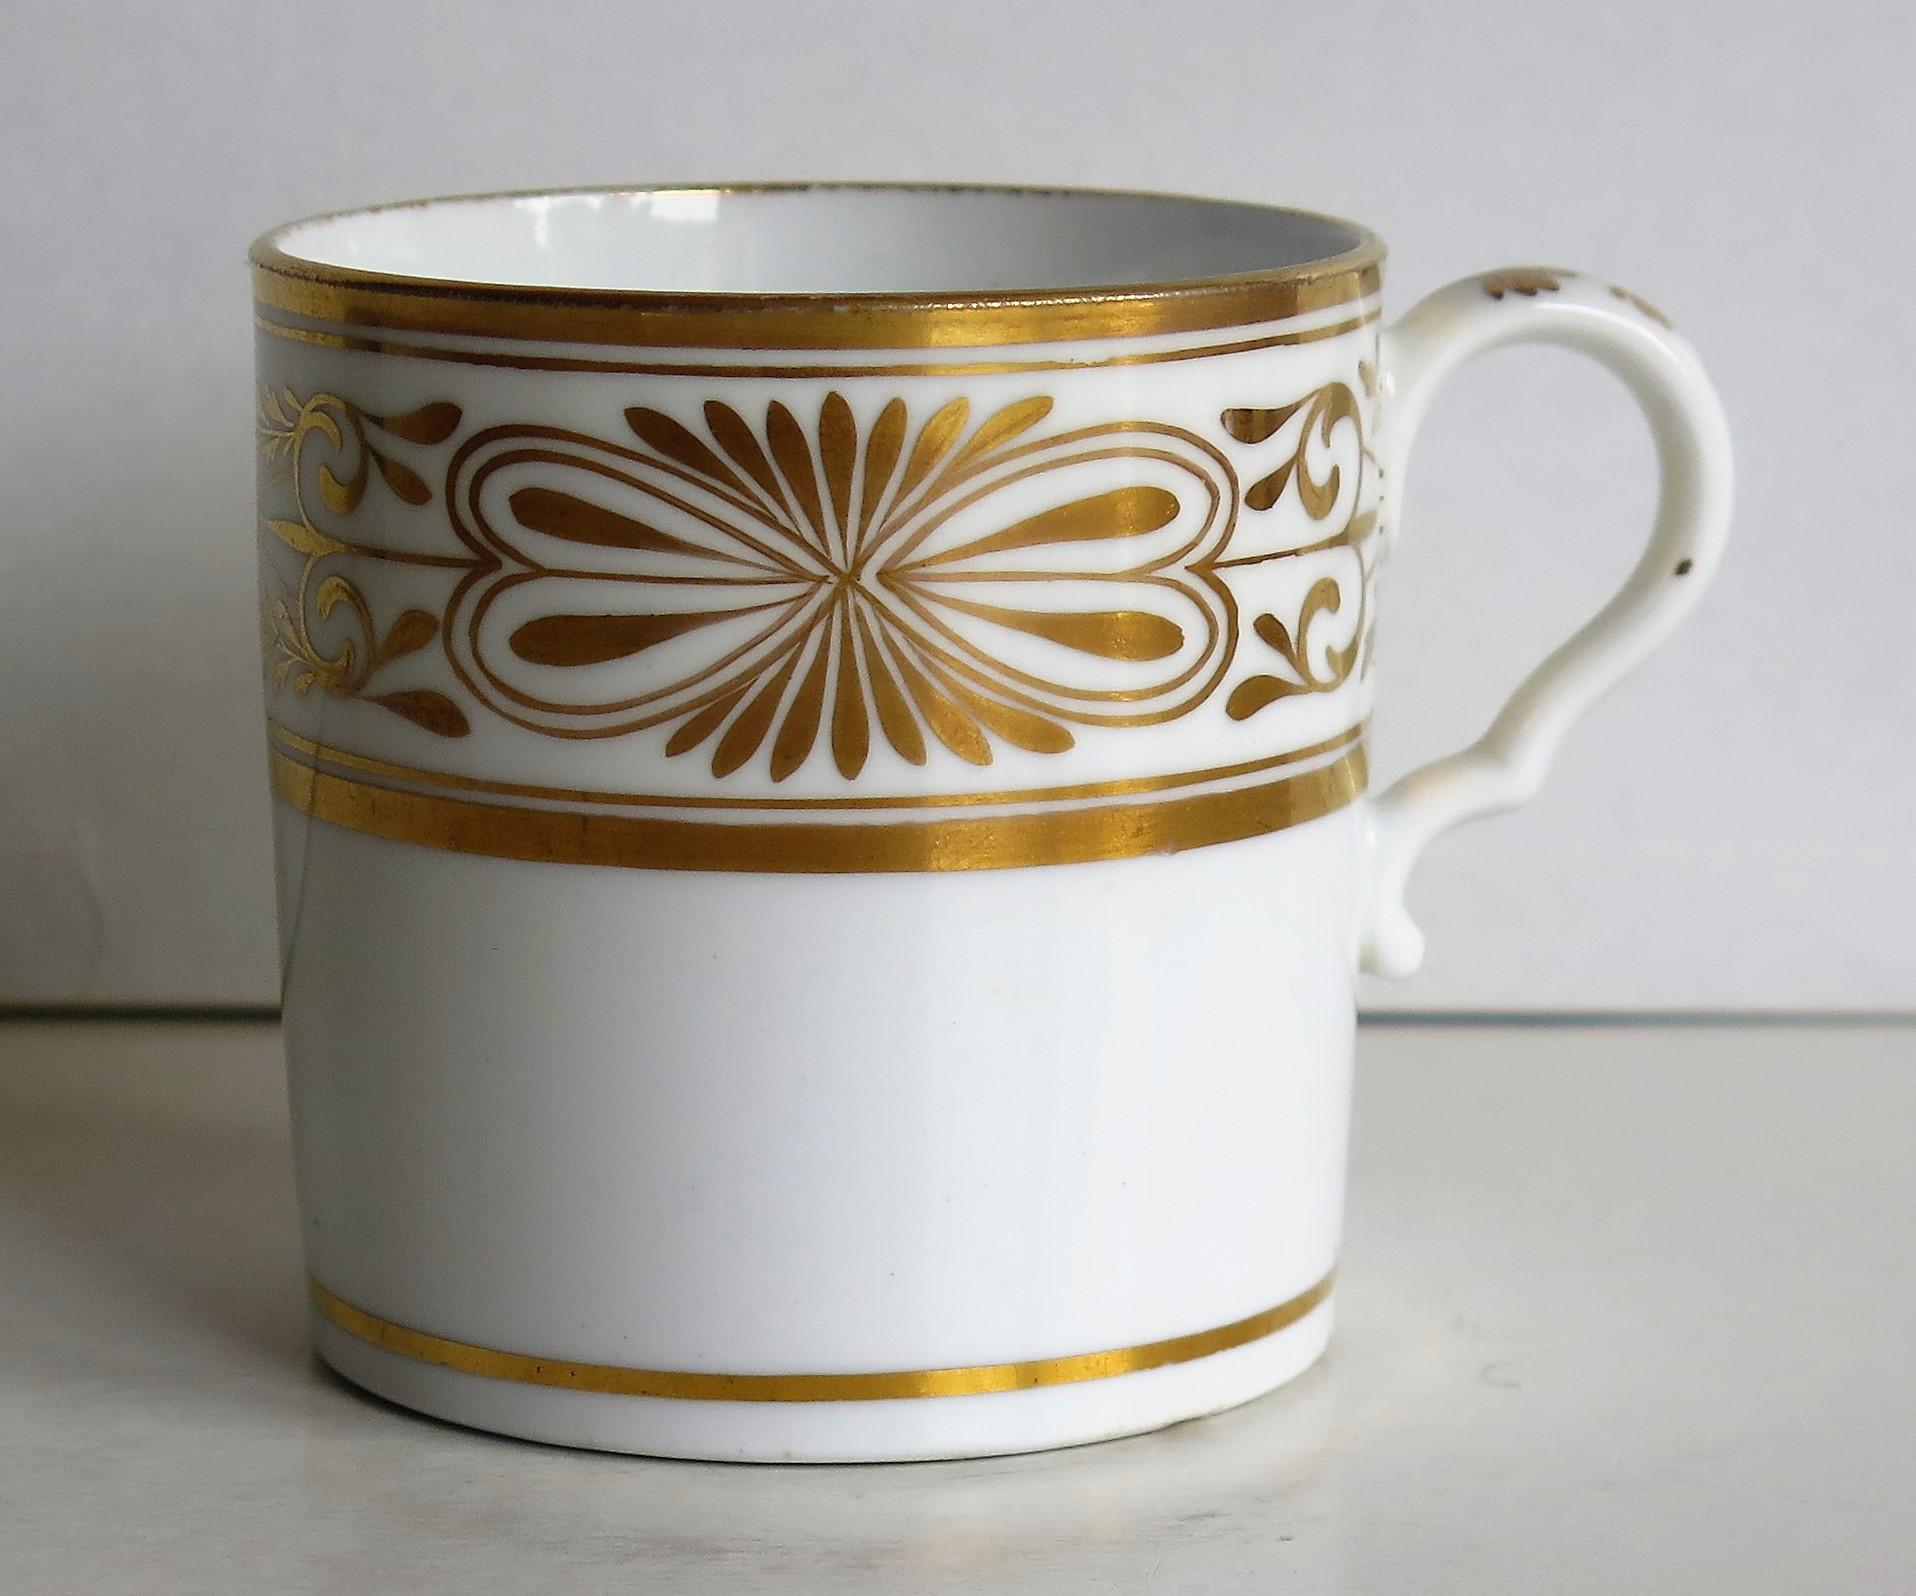 Il s'agit d'un bel exemple de boîte à café (tasse) en porcelaine anglaise d'époque George III, fabriquée par Spode au début du XIXe siècle, vers 1810.

Le Can a un côté droit et une anse en boucle Spode avec un coup de pied prononcé ou un coude à